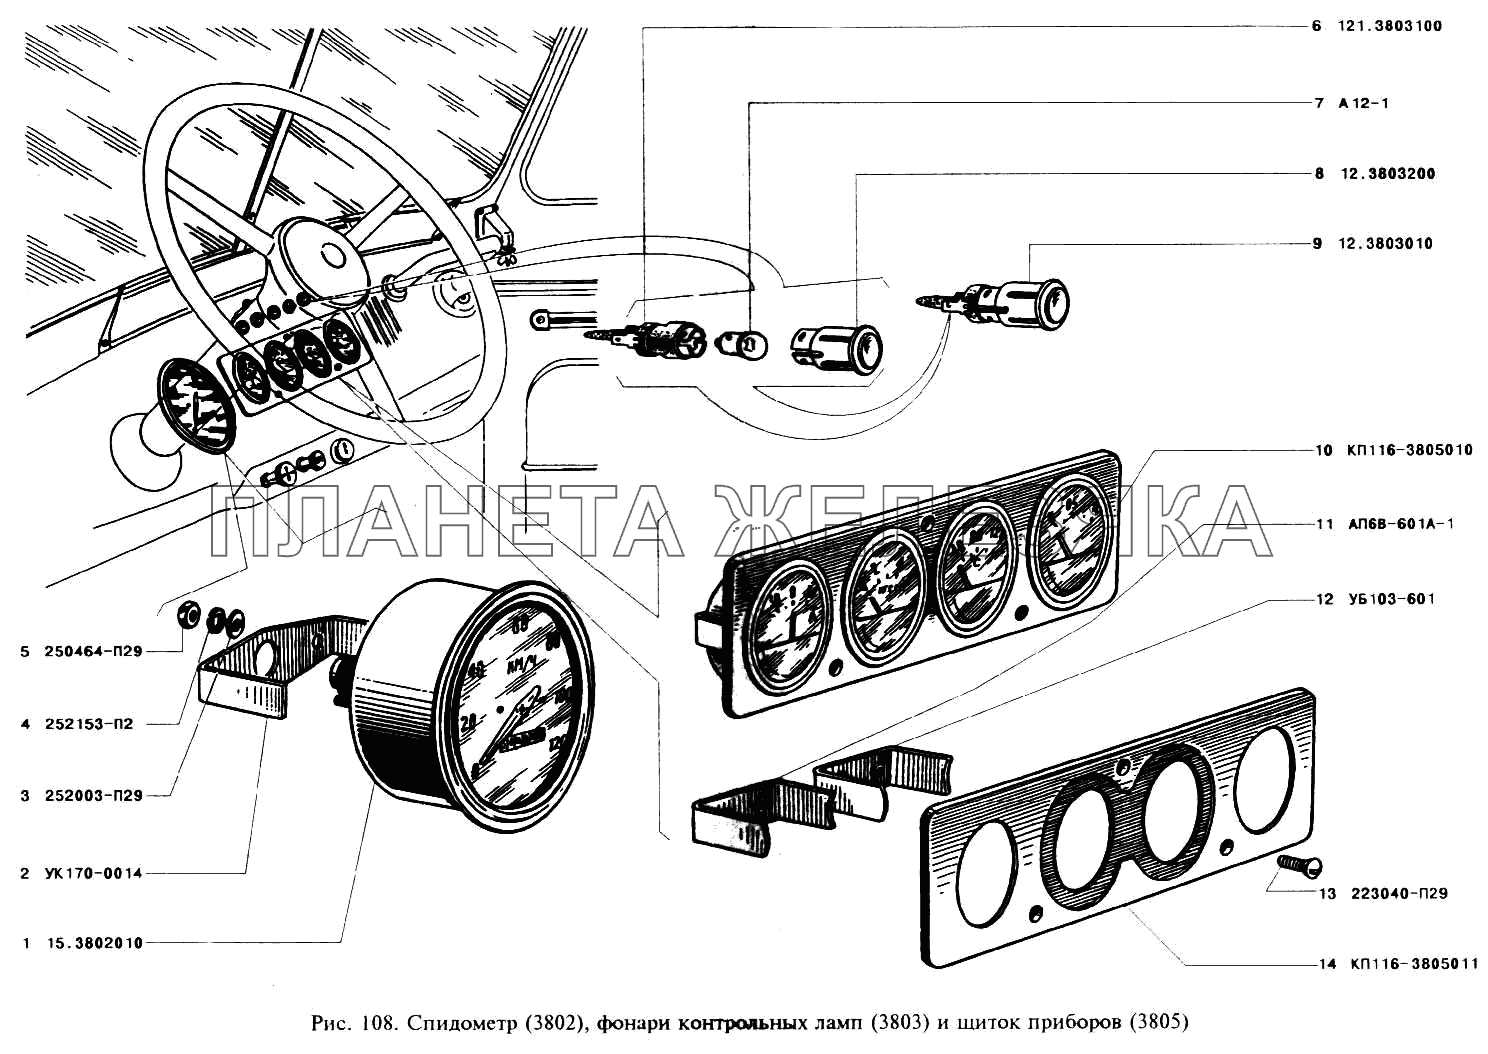 Спидометр, фонари контрольных ламп и щиток приборов УАЗ-3151